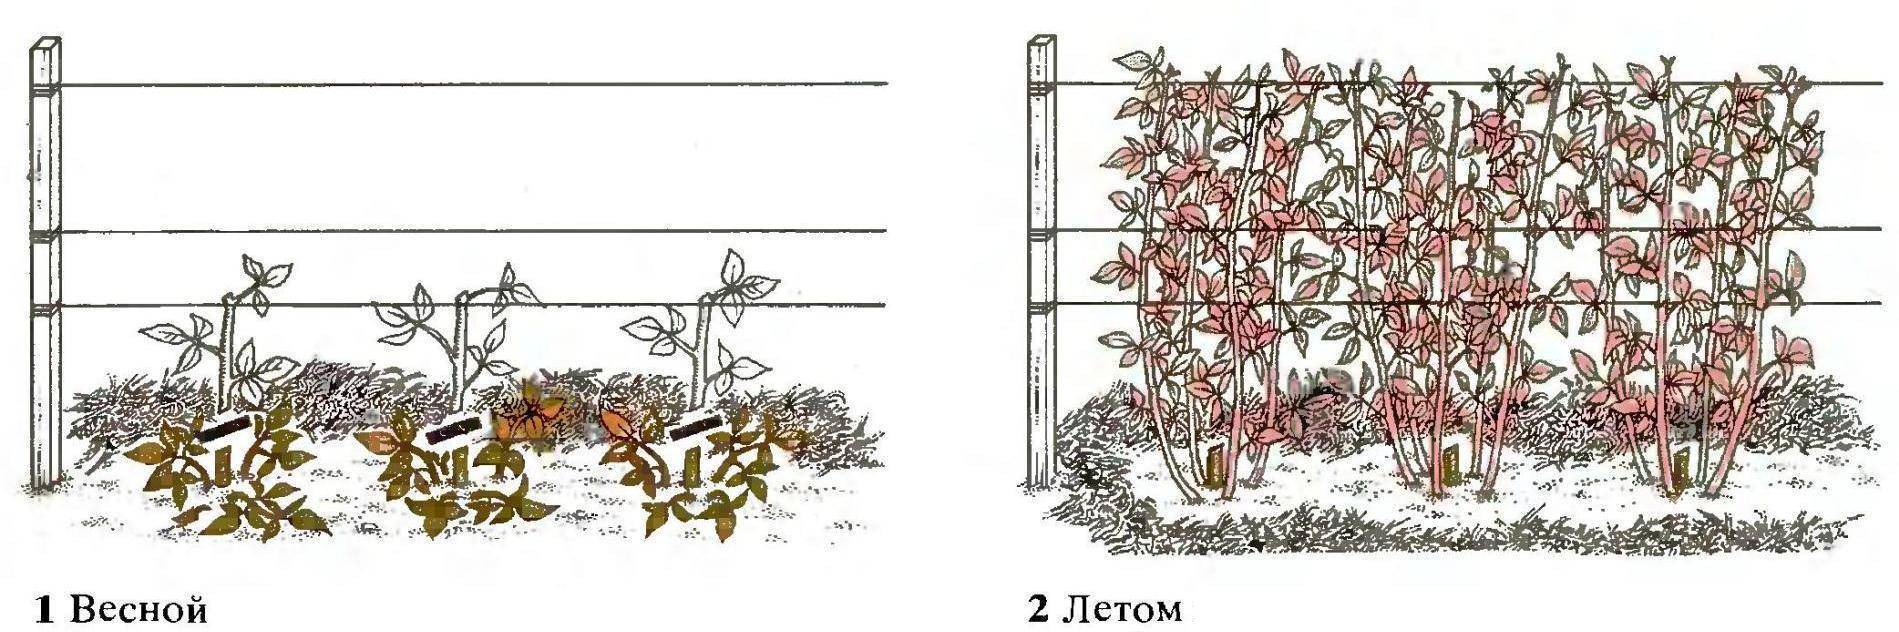 Как правильно посадить малину, чтобы получить много сладких ягод